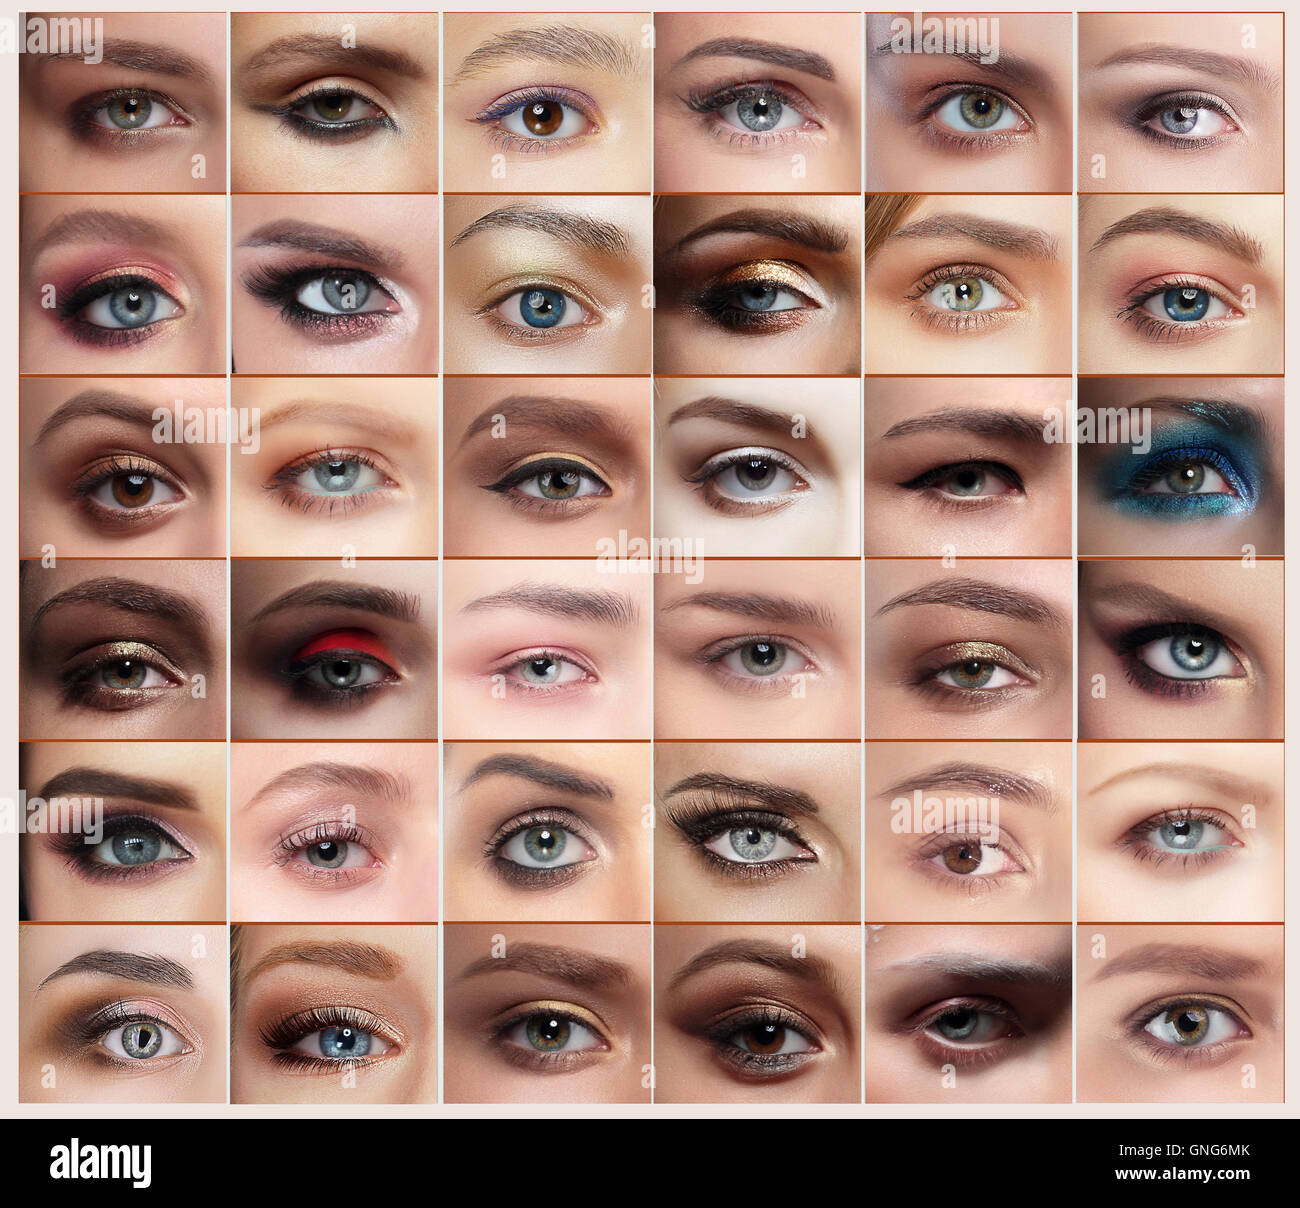 Collage de 36 closeup ojos imágenes de mujeres, con tretas. La ceja. Foto de stock